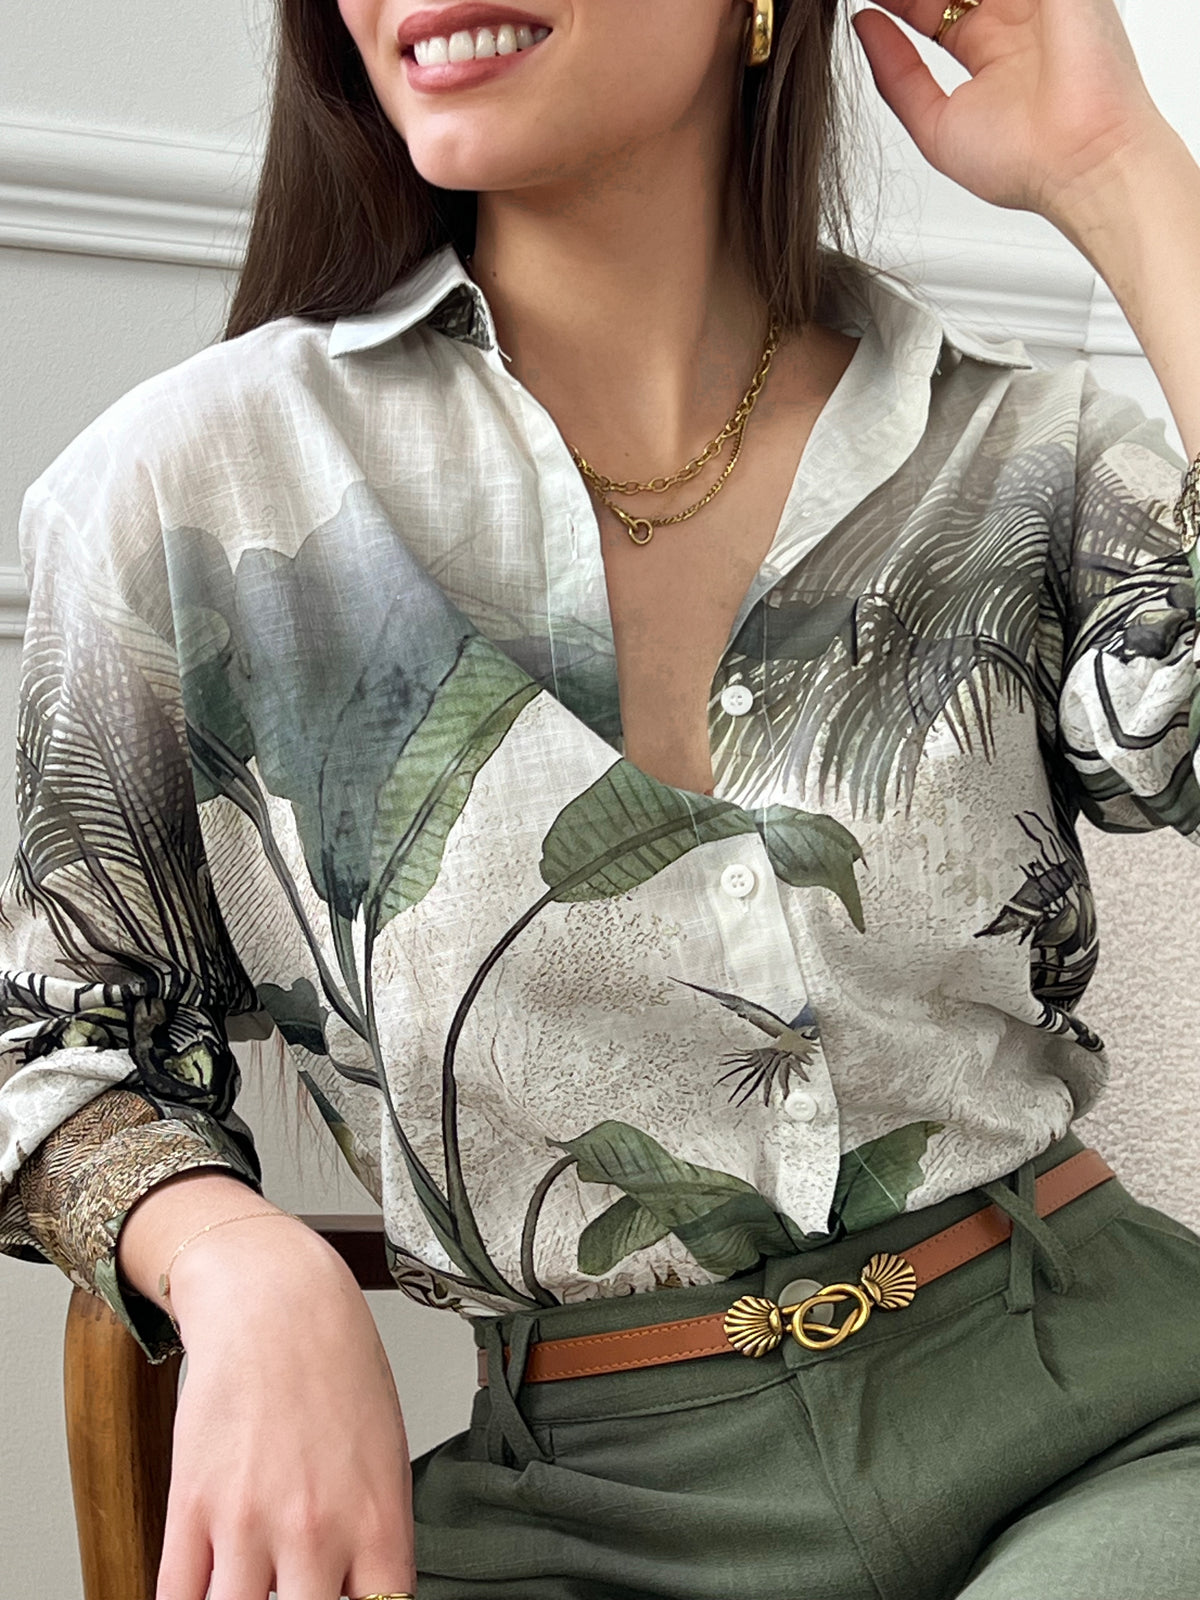 Cette chemise légère arbore des motifs tropicaux en nuances de vert et de marron, évoquant des vibes estivales et exotiques. Parfaite pour les journées ensoleillées, cette chemise ajoute une touche de fantaisie à votre tenue tout en restant facile à porter.